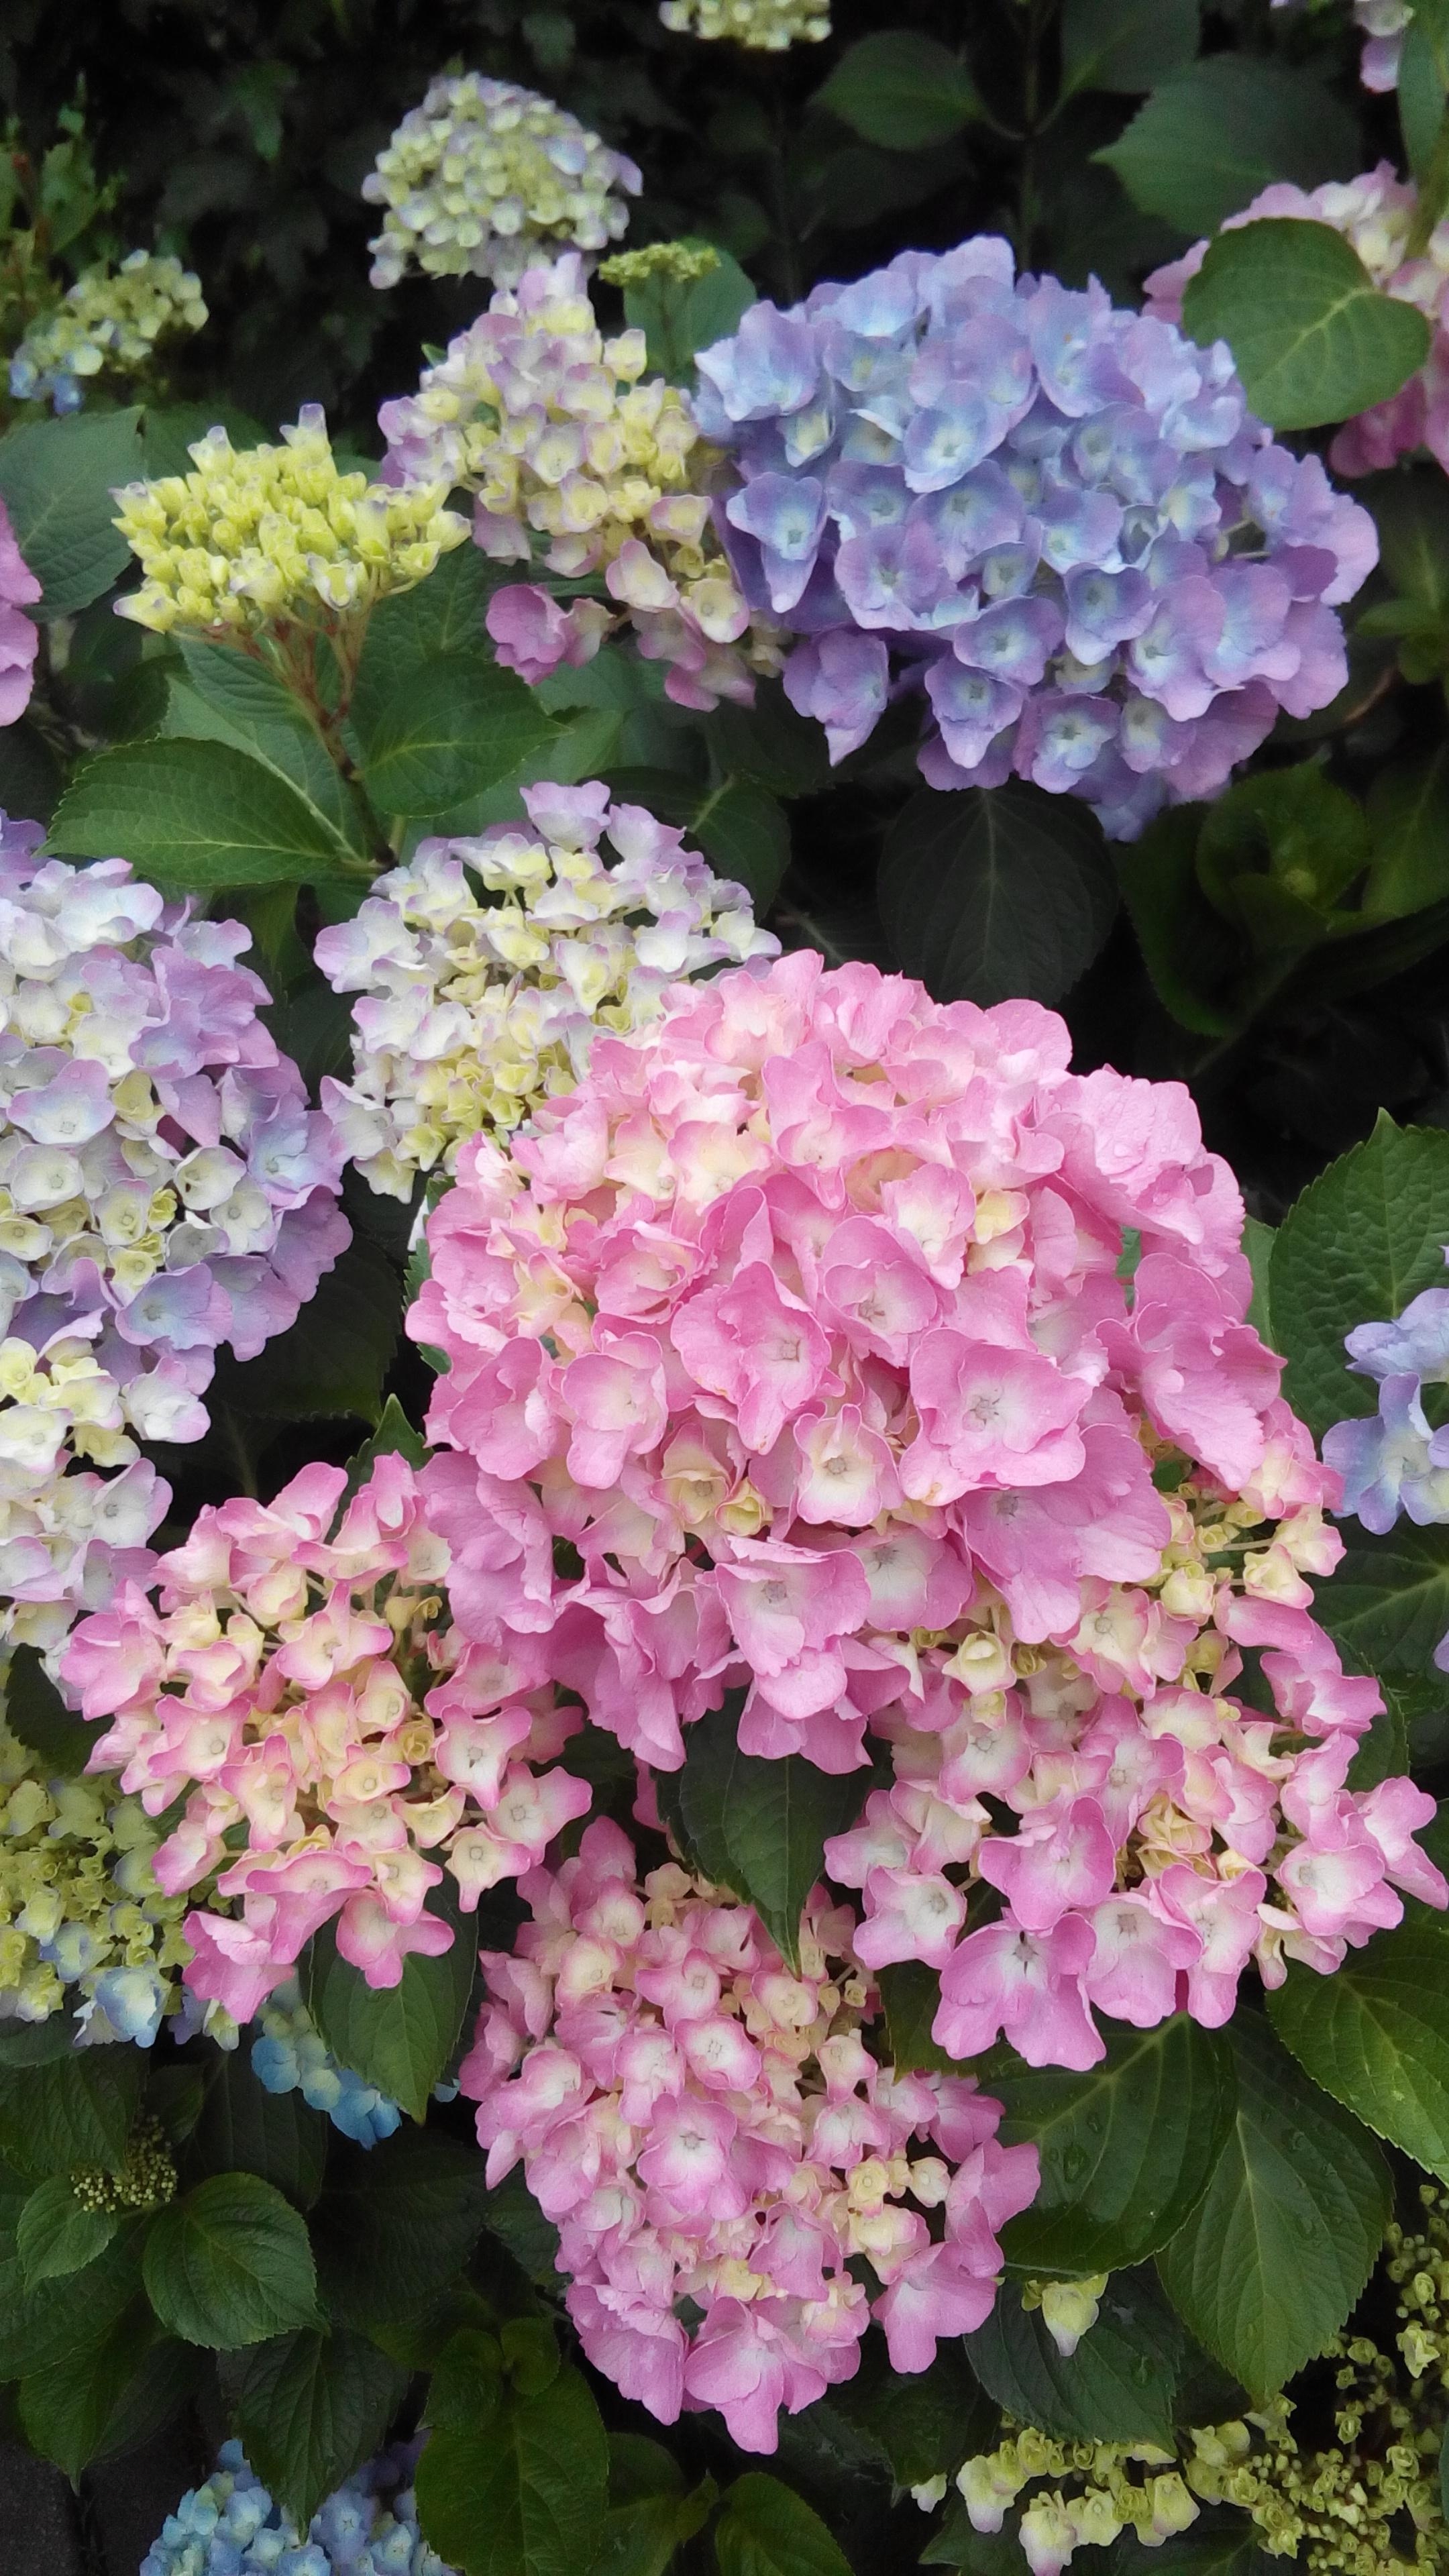 #outdoorweek #sommerblumen
die Hortensie ist für mich "die" Sommerblume, egal ob Ballen, Bauern oder Schneeballhortensie